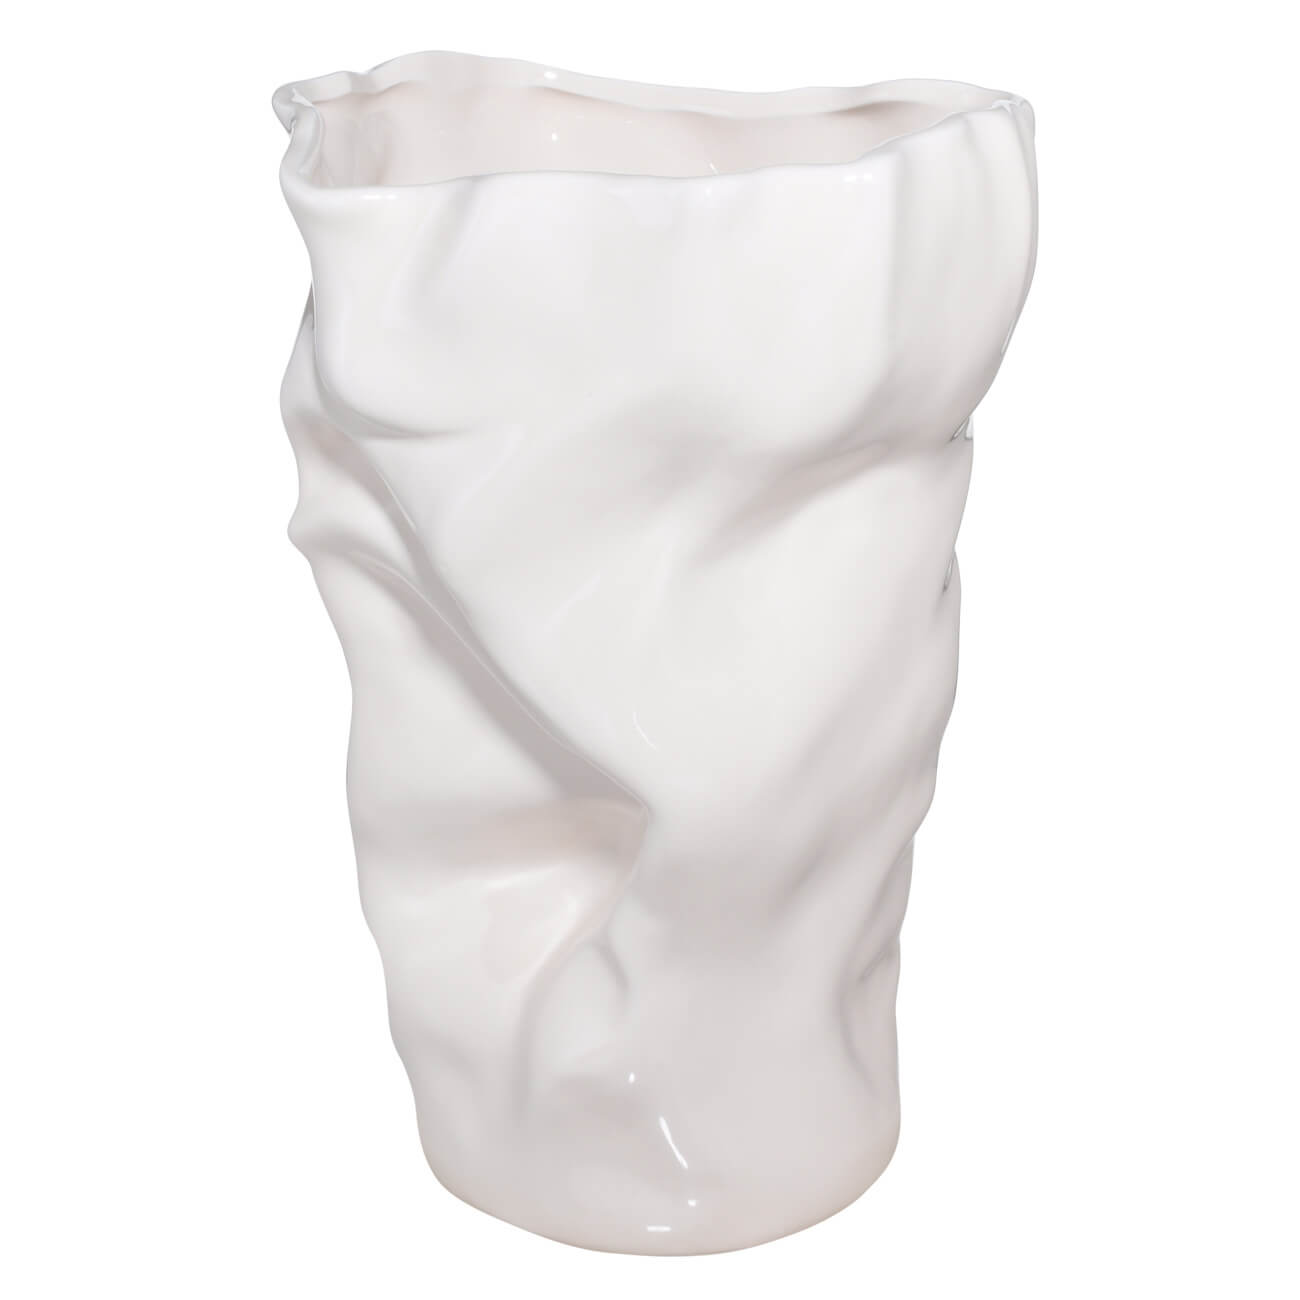 Ваза для цветов, 27 см, керамика, молочная, Мятый эффект, Crumple ваза для ов 27 см керамика молочная мятый эффект crumple